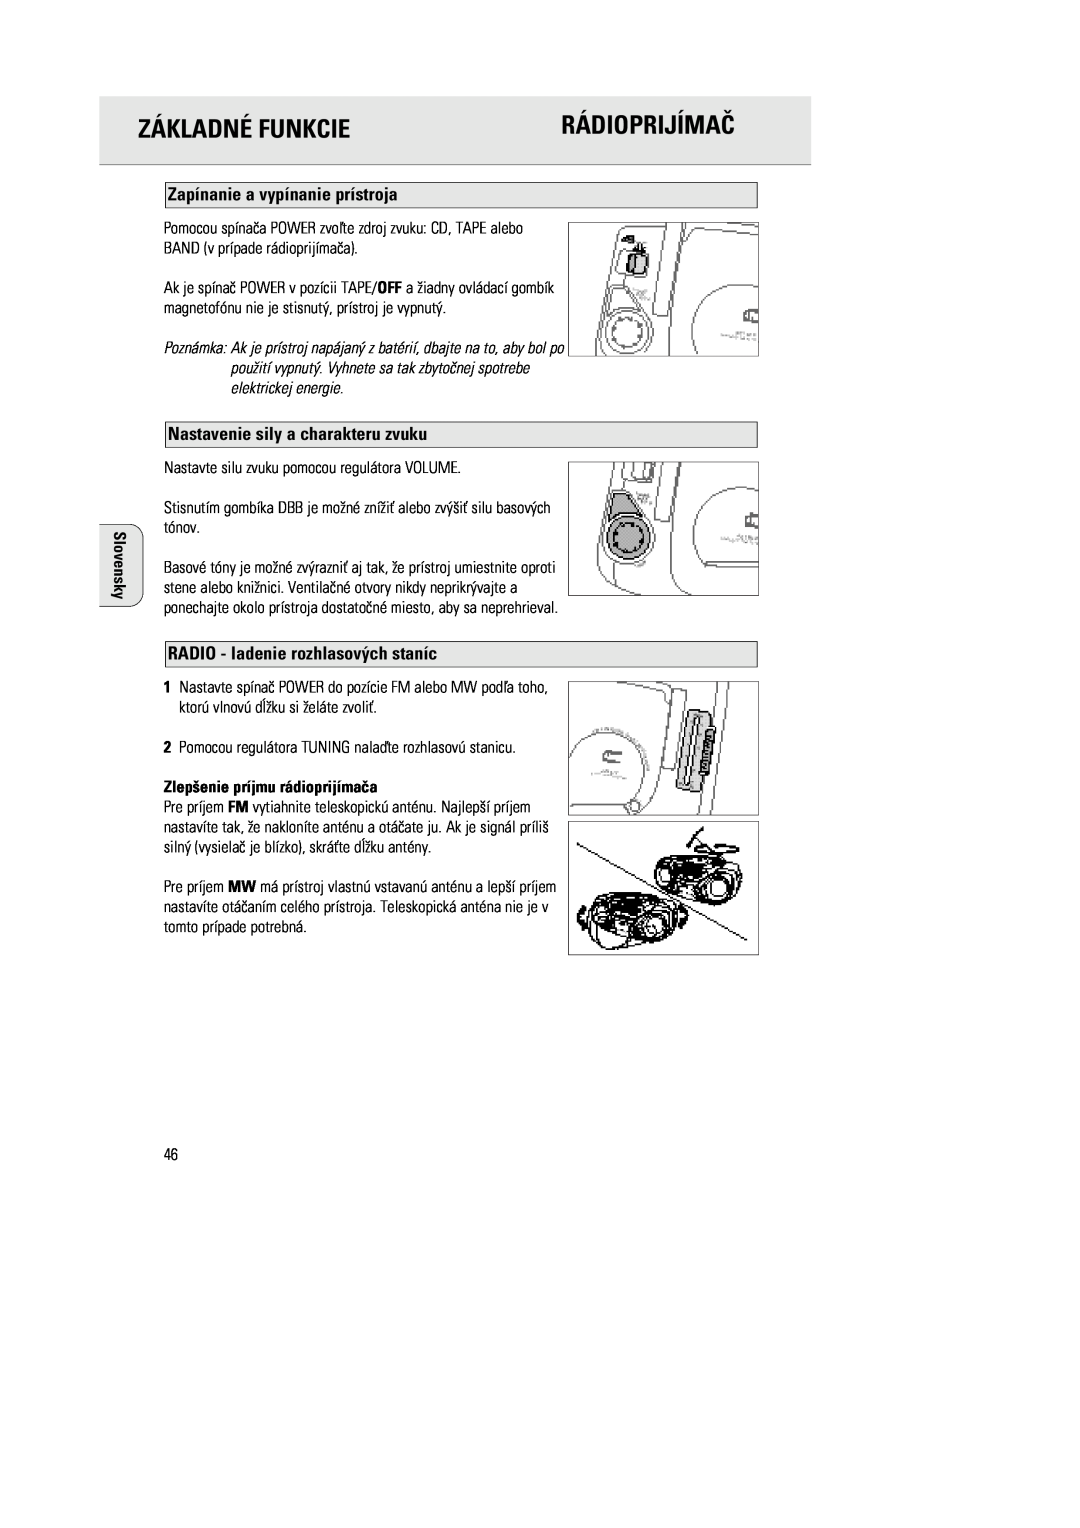 Philips 1030 manual ZçKLADNƒ FUNKCIE, Zap’nanie a vyp’nanie pr’stroja, Nastavenie sily a charakteru zvuku, RçDIOPRIJêMAé 